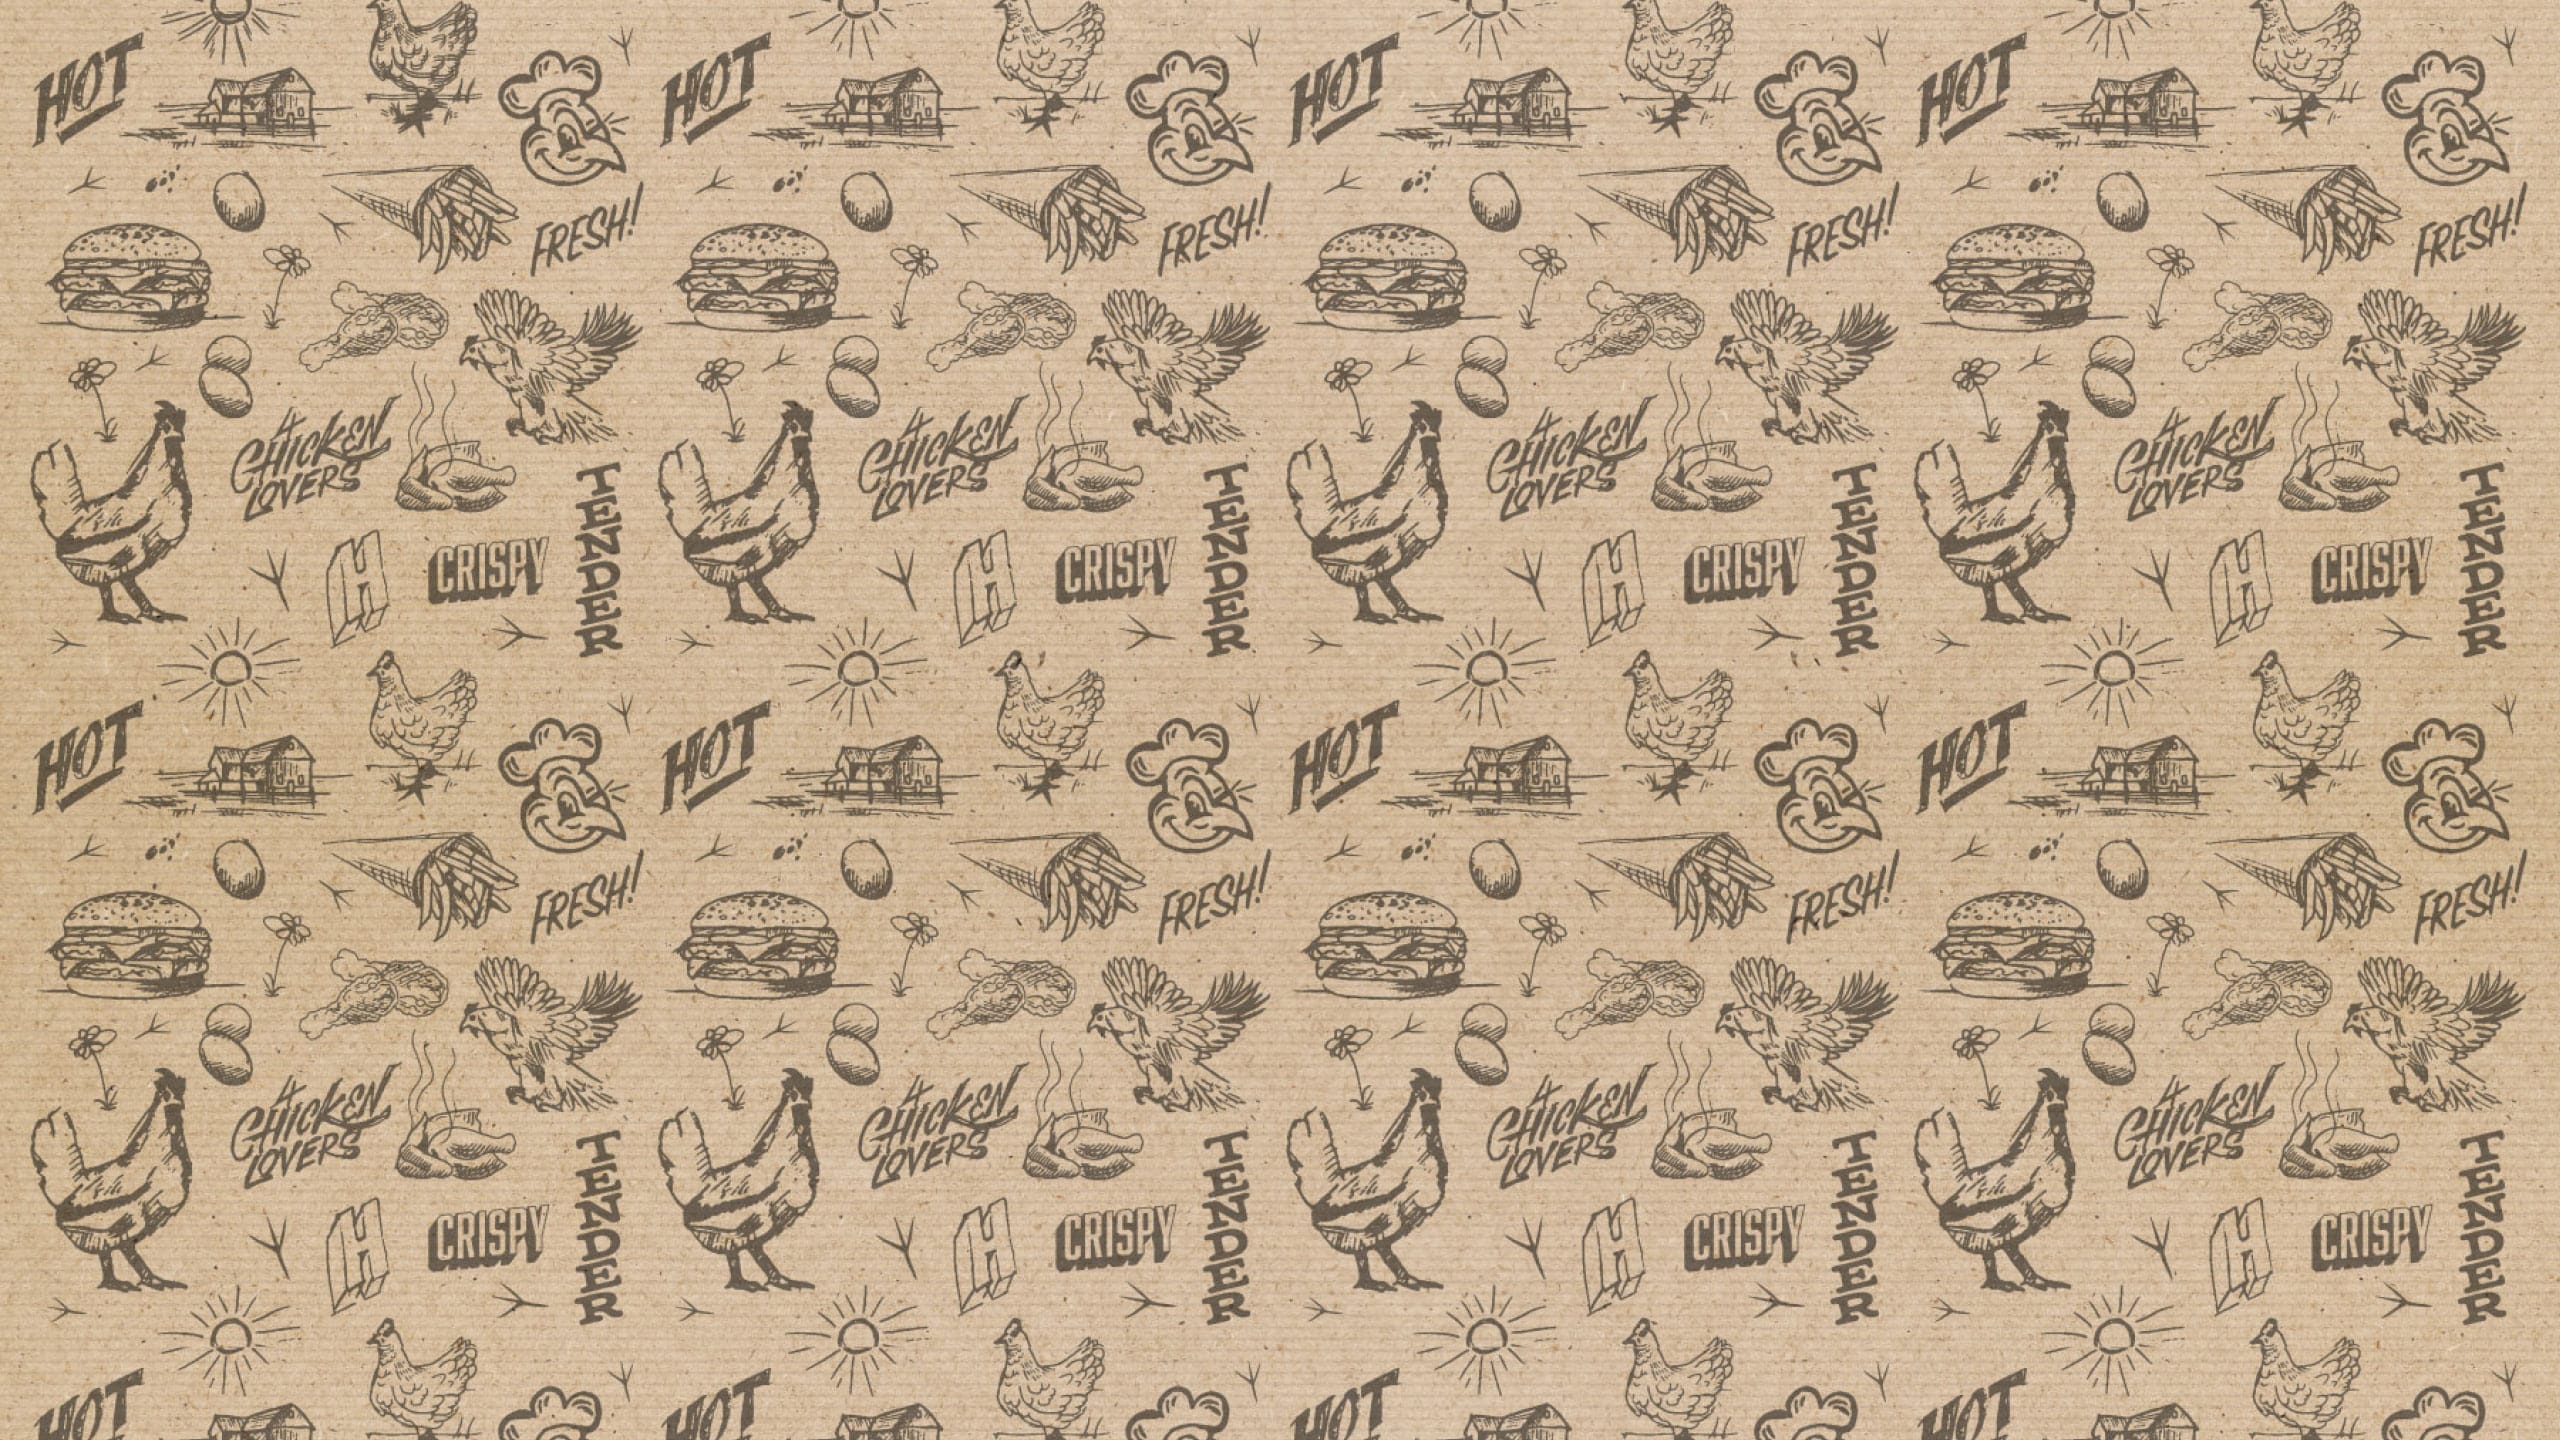 Hector-chicken-branding-pattern-illustrations